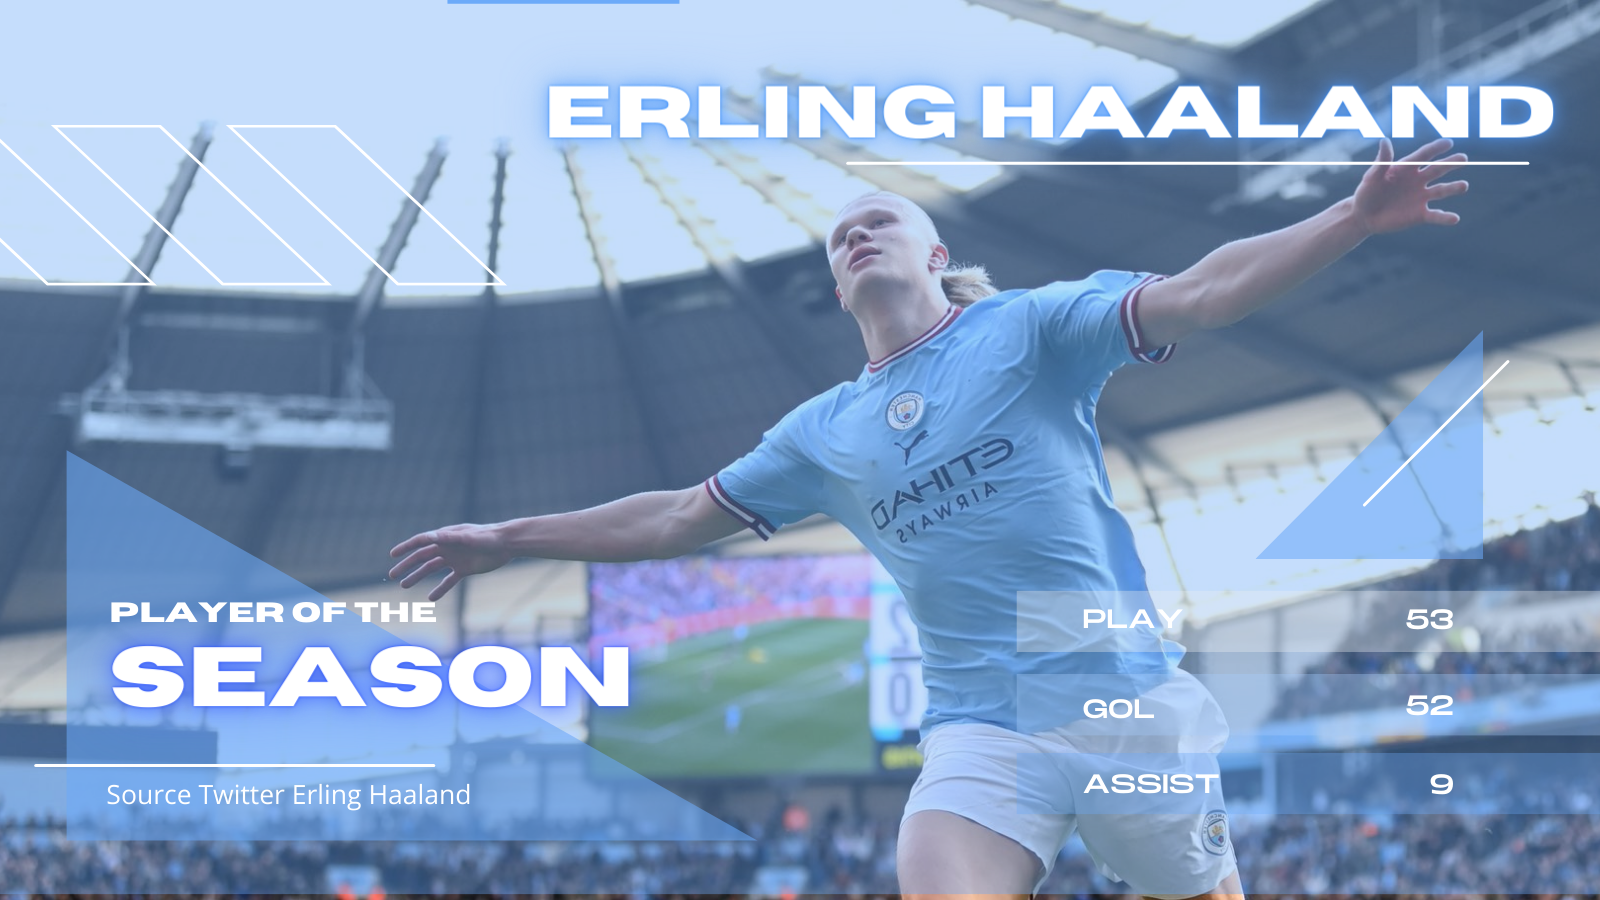 Prestasi Erling Haaland di Musim Debutnya Bersama Manchester City, Ada yang Bisa Ngalahin? 